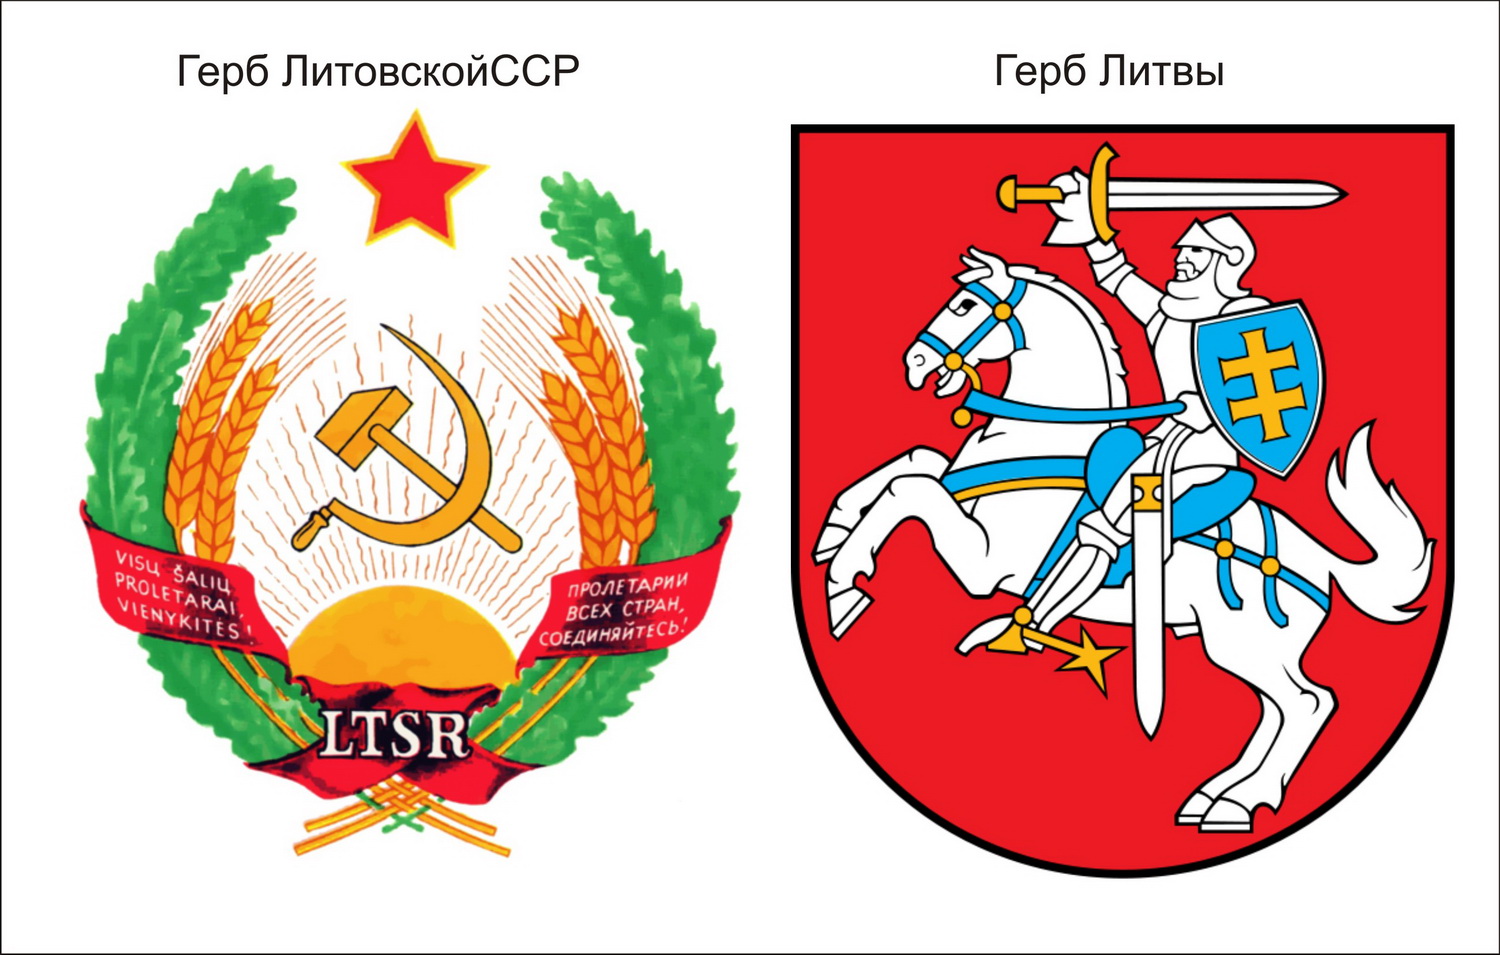 Литовская Советская Социалистическая Республика герб